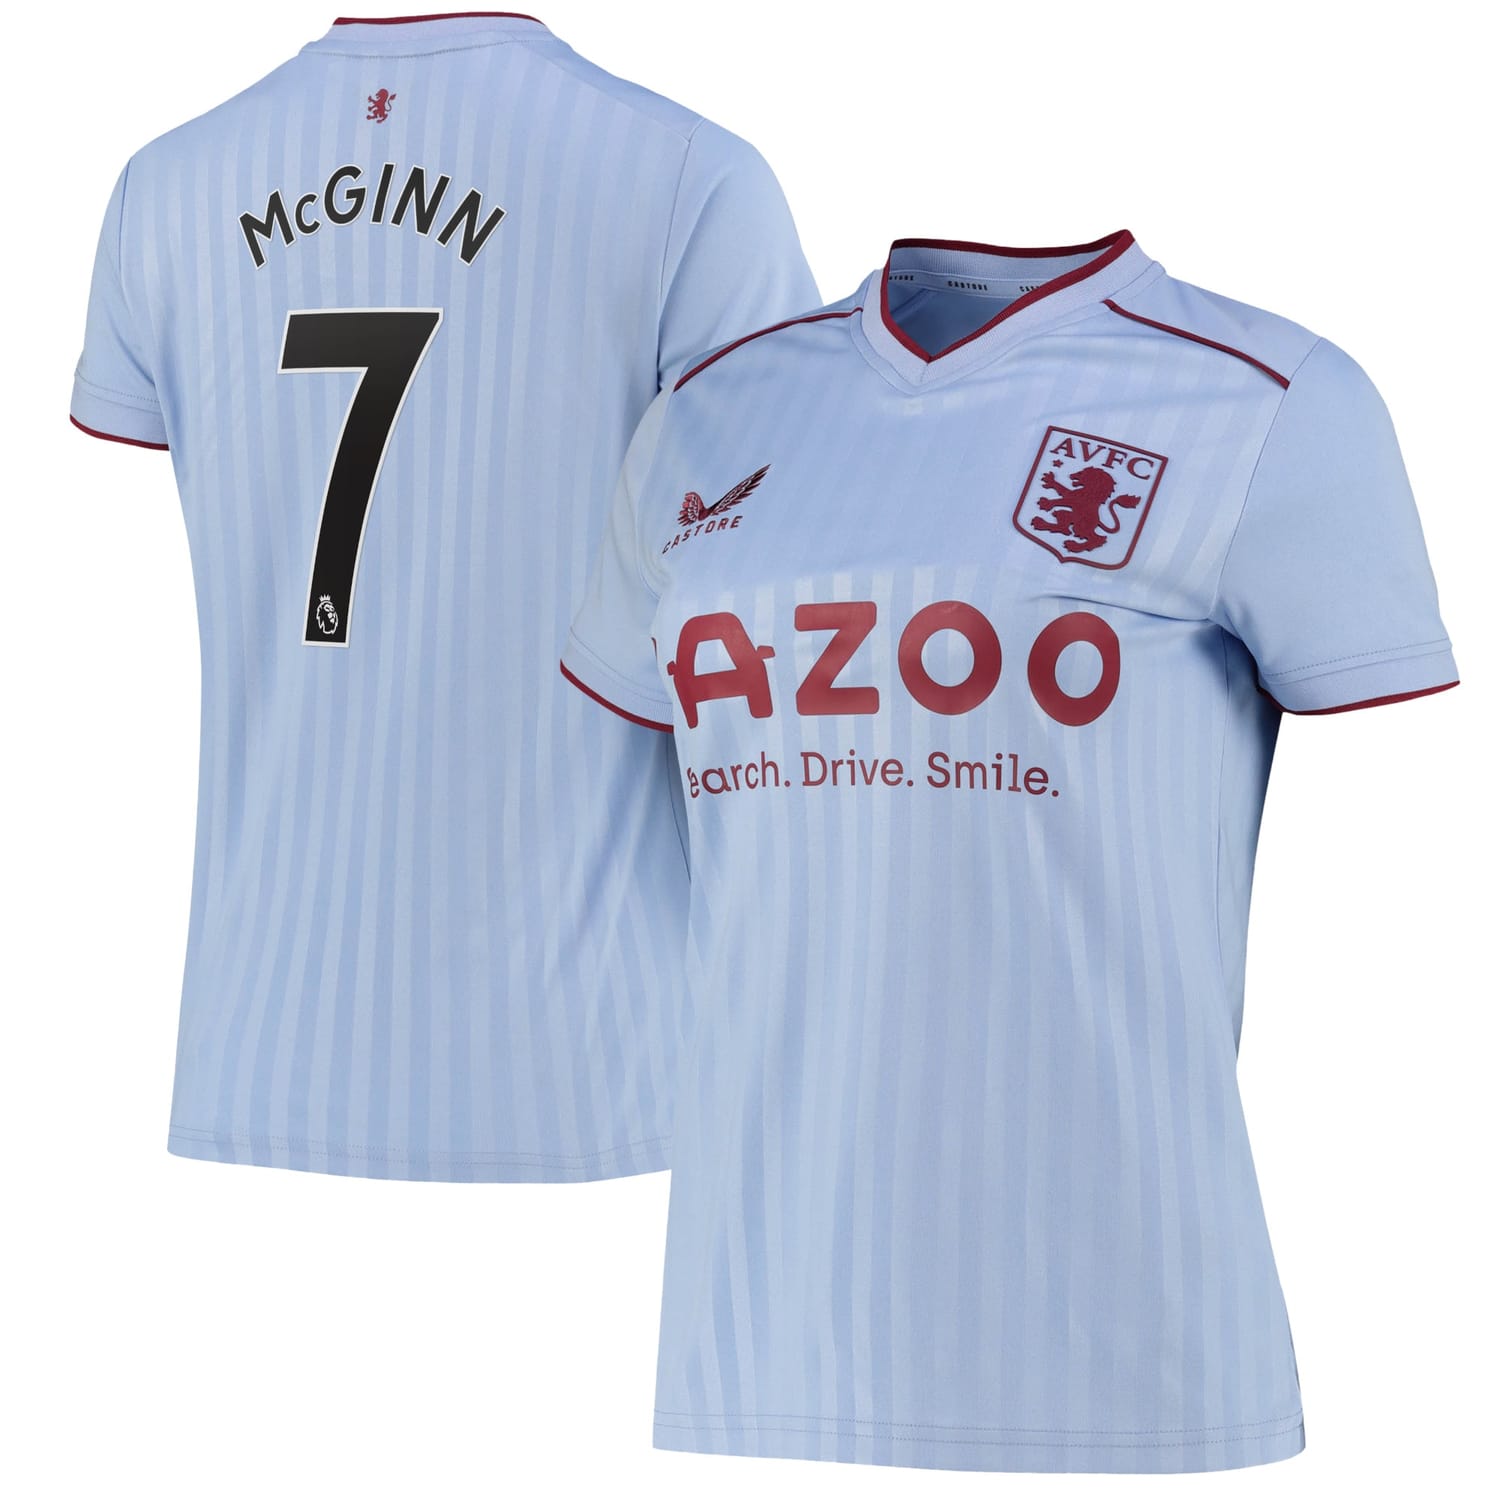 Premier League Aston Villa Away Jersey Shirt 2022-23 player John McGinn 7 printing for Women